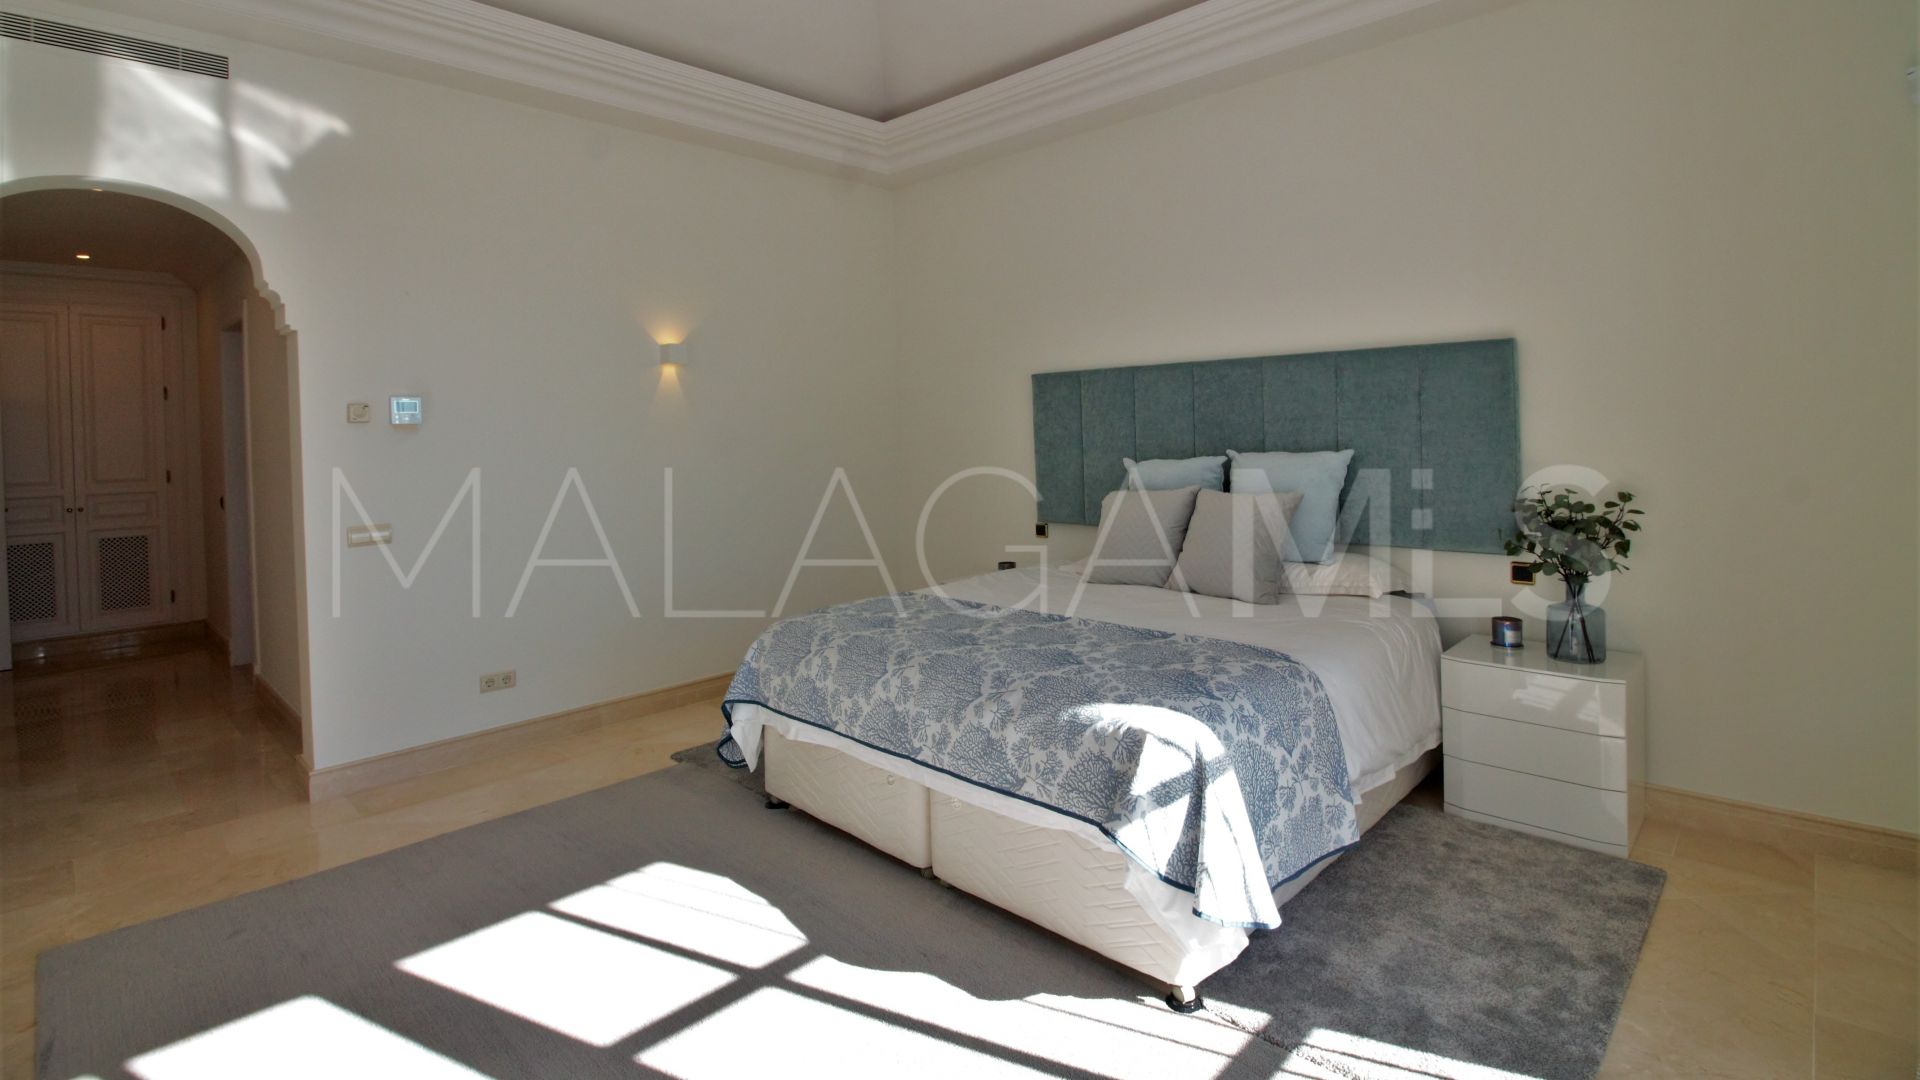 7 bedrooms villa in La Zagaleta for sale